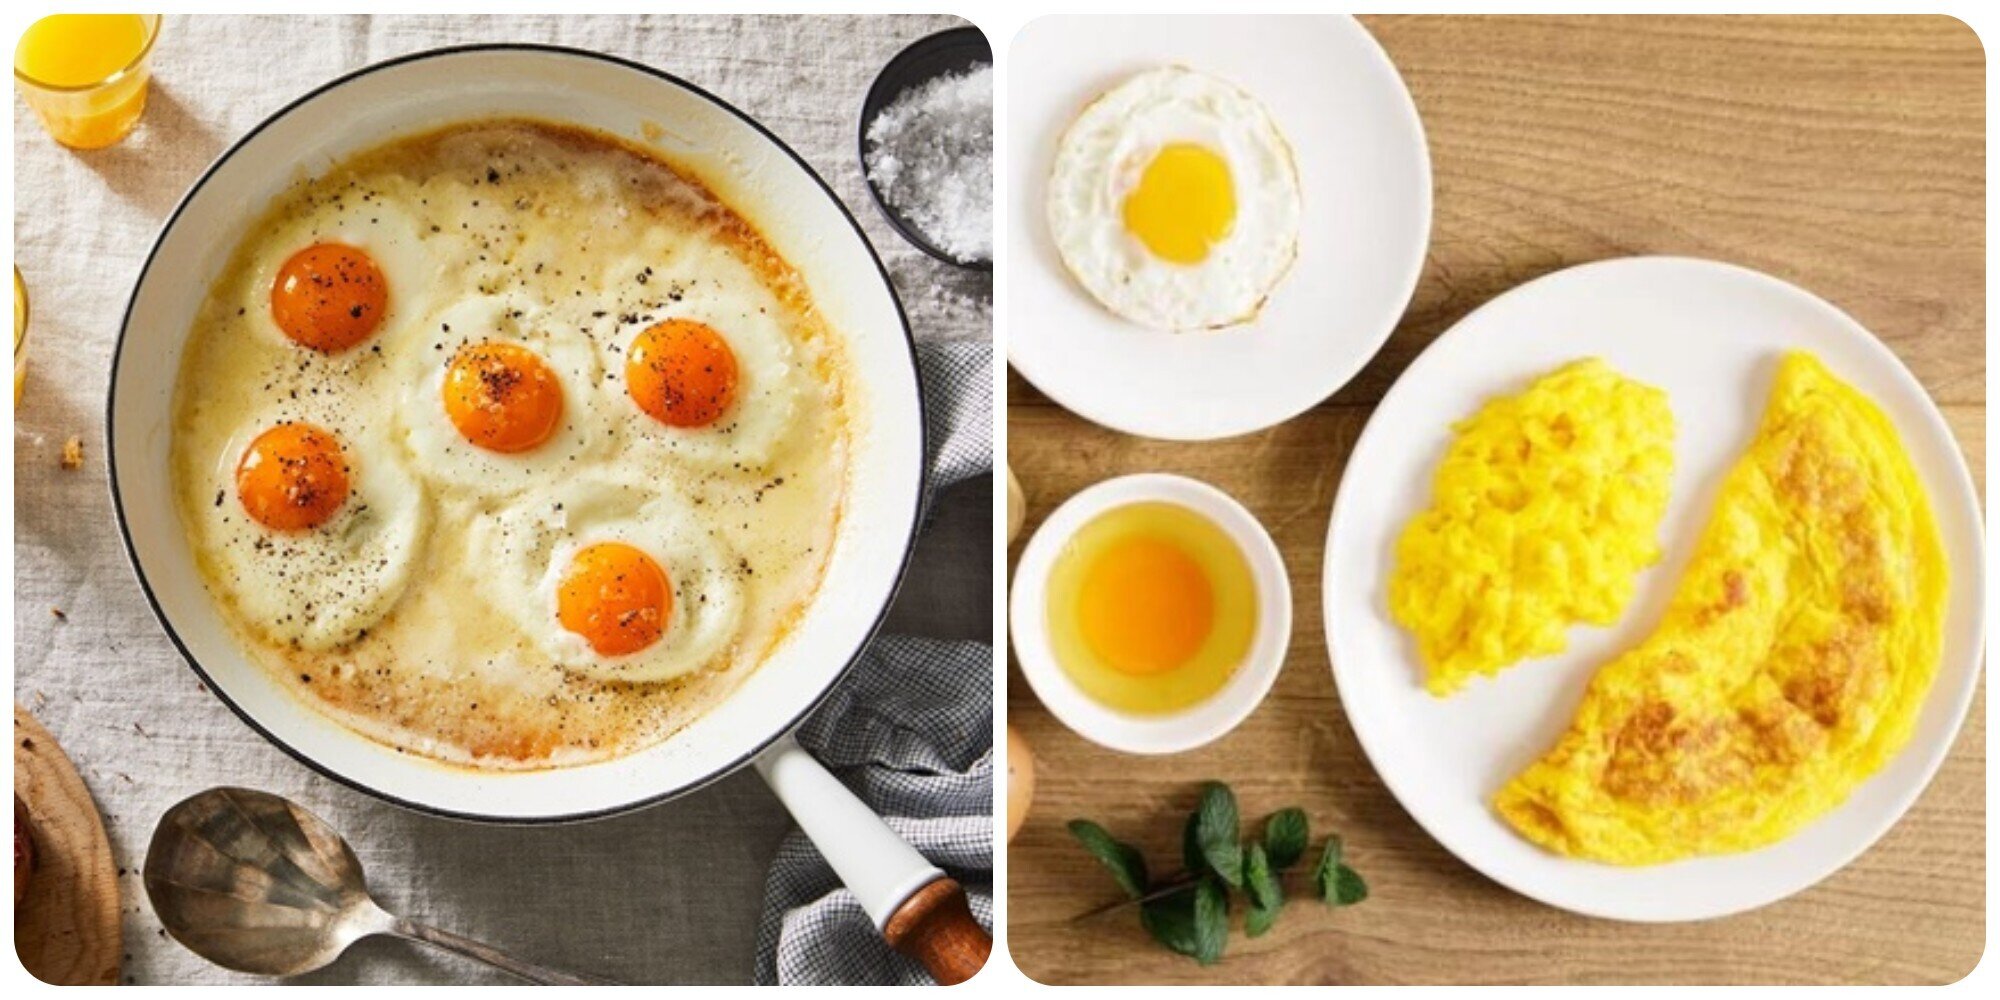 Điều gì sẽ xảy ra với sức khoẻ nếu ăn quá nhiều trứng?